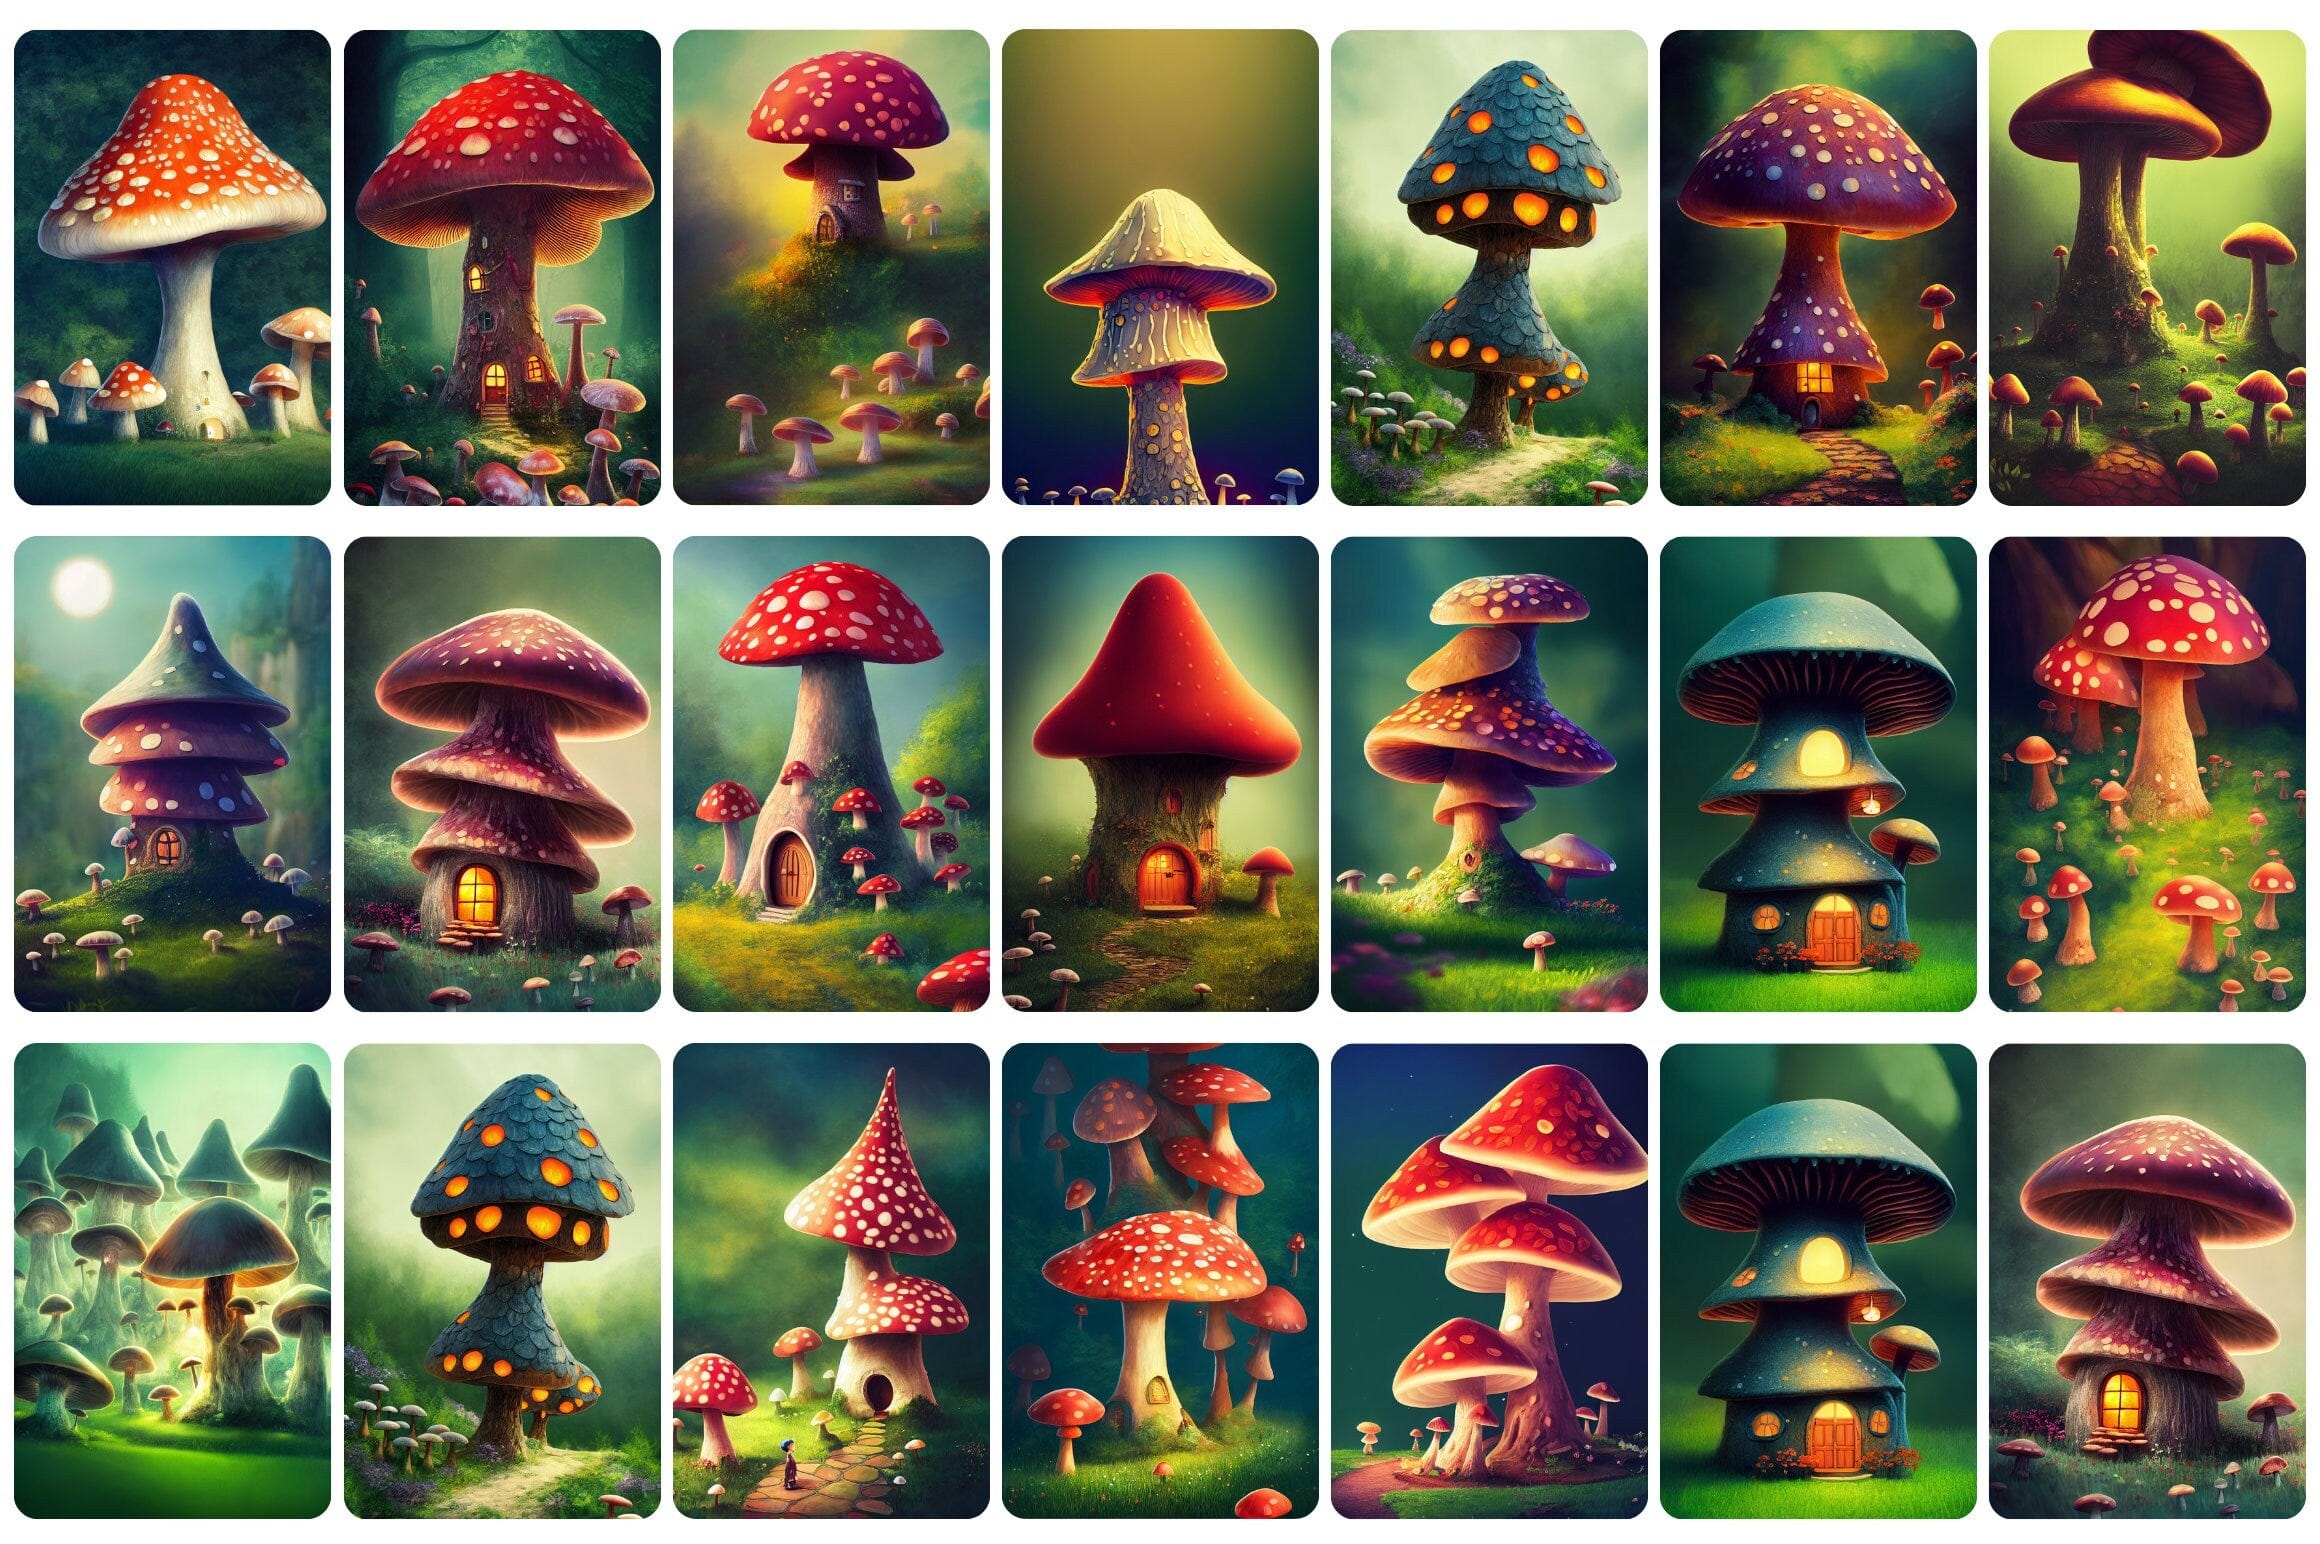 Printable wall art: 110+ Fantasy Magic Mushrooms in Wonderland, Wall Art Set, Digital Download Digital Download Sumobundle